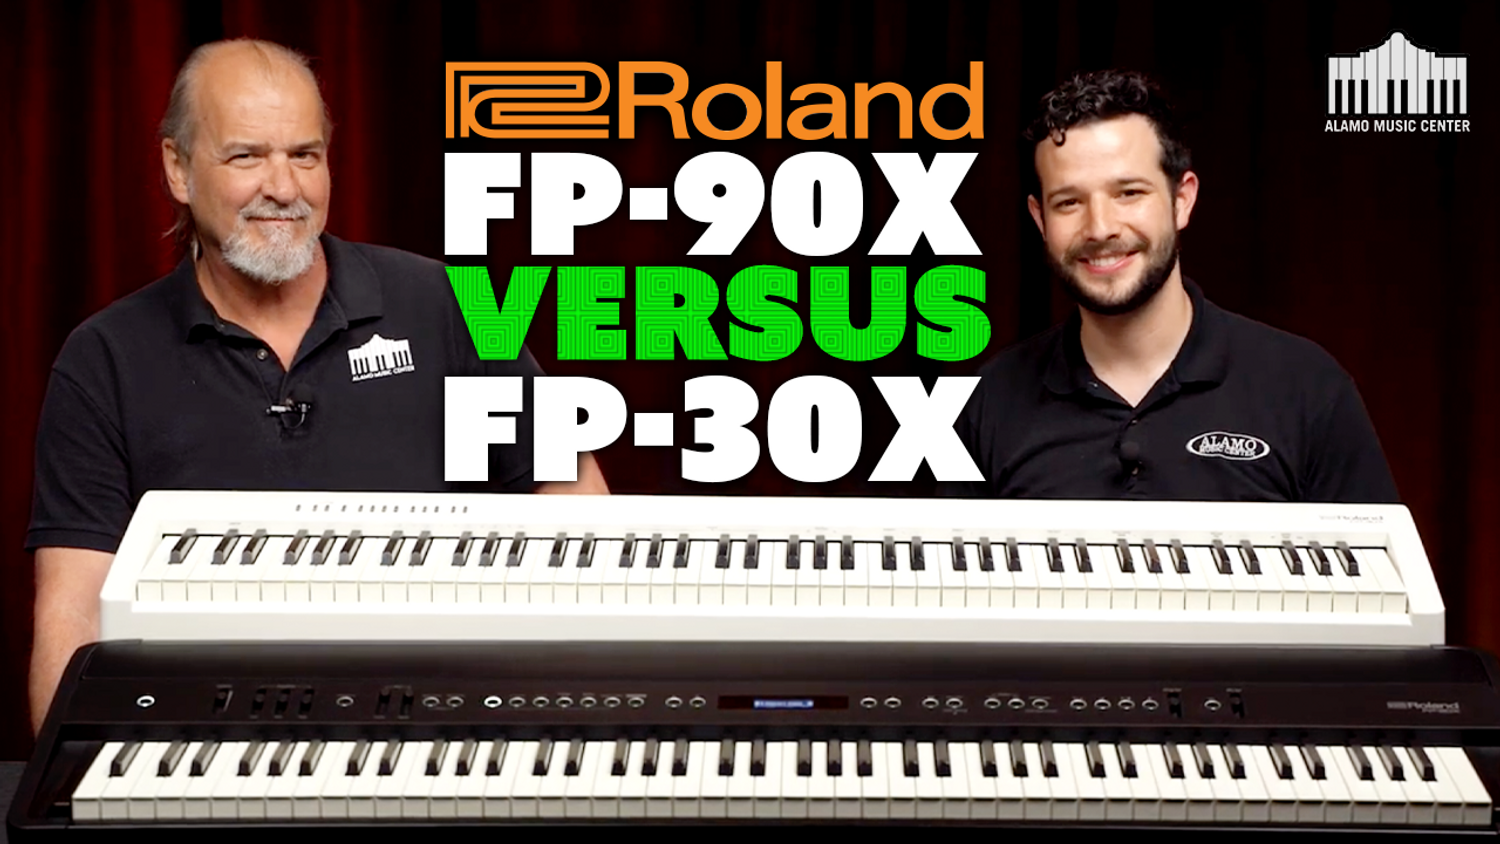 Roland Fp 90x Vs Fp 30x Digital Piano Comparison Best Features Sounds Alamo Music